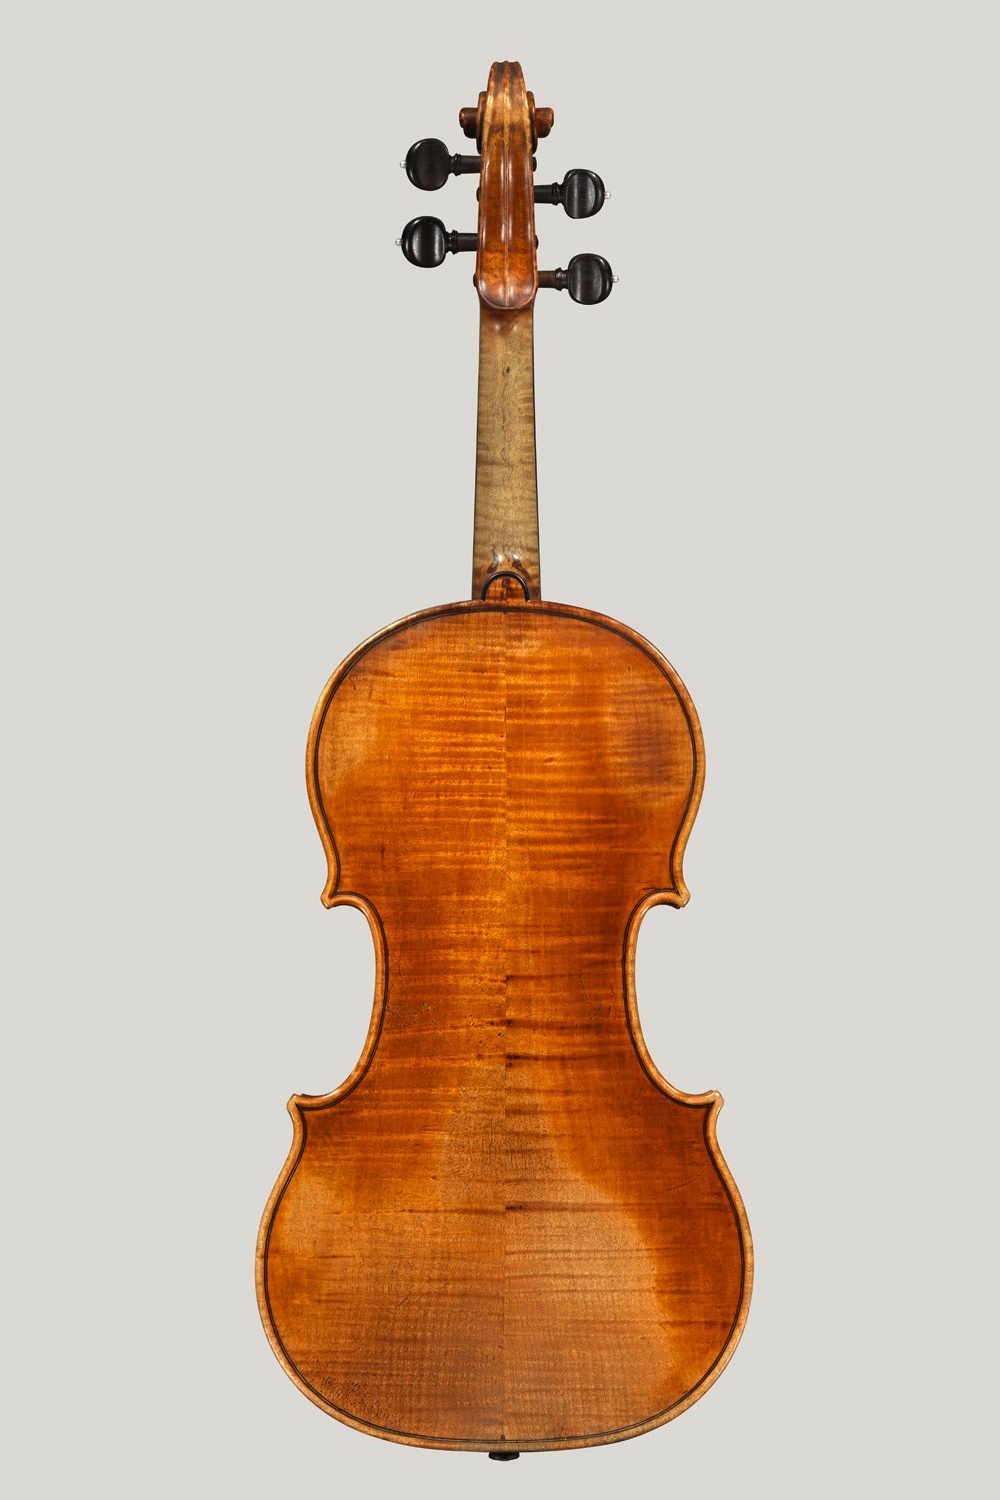 Antonio Stradivari | Sparebankstiftelsen